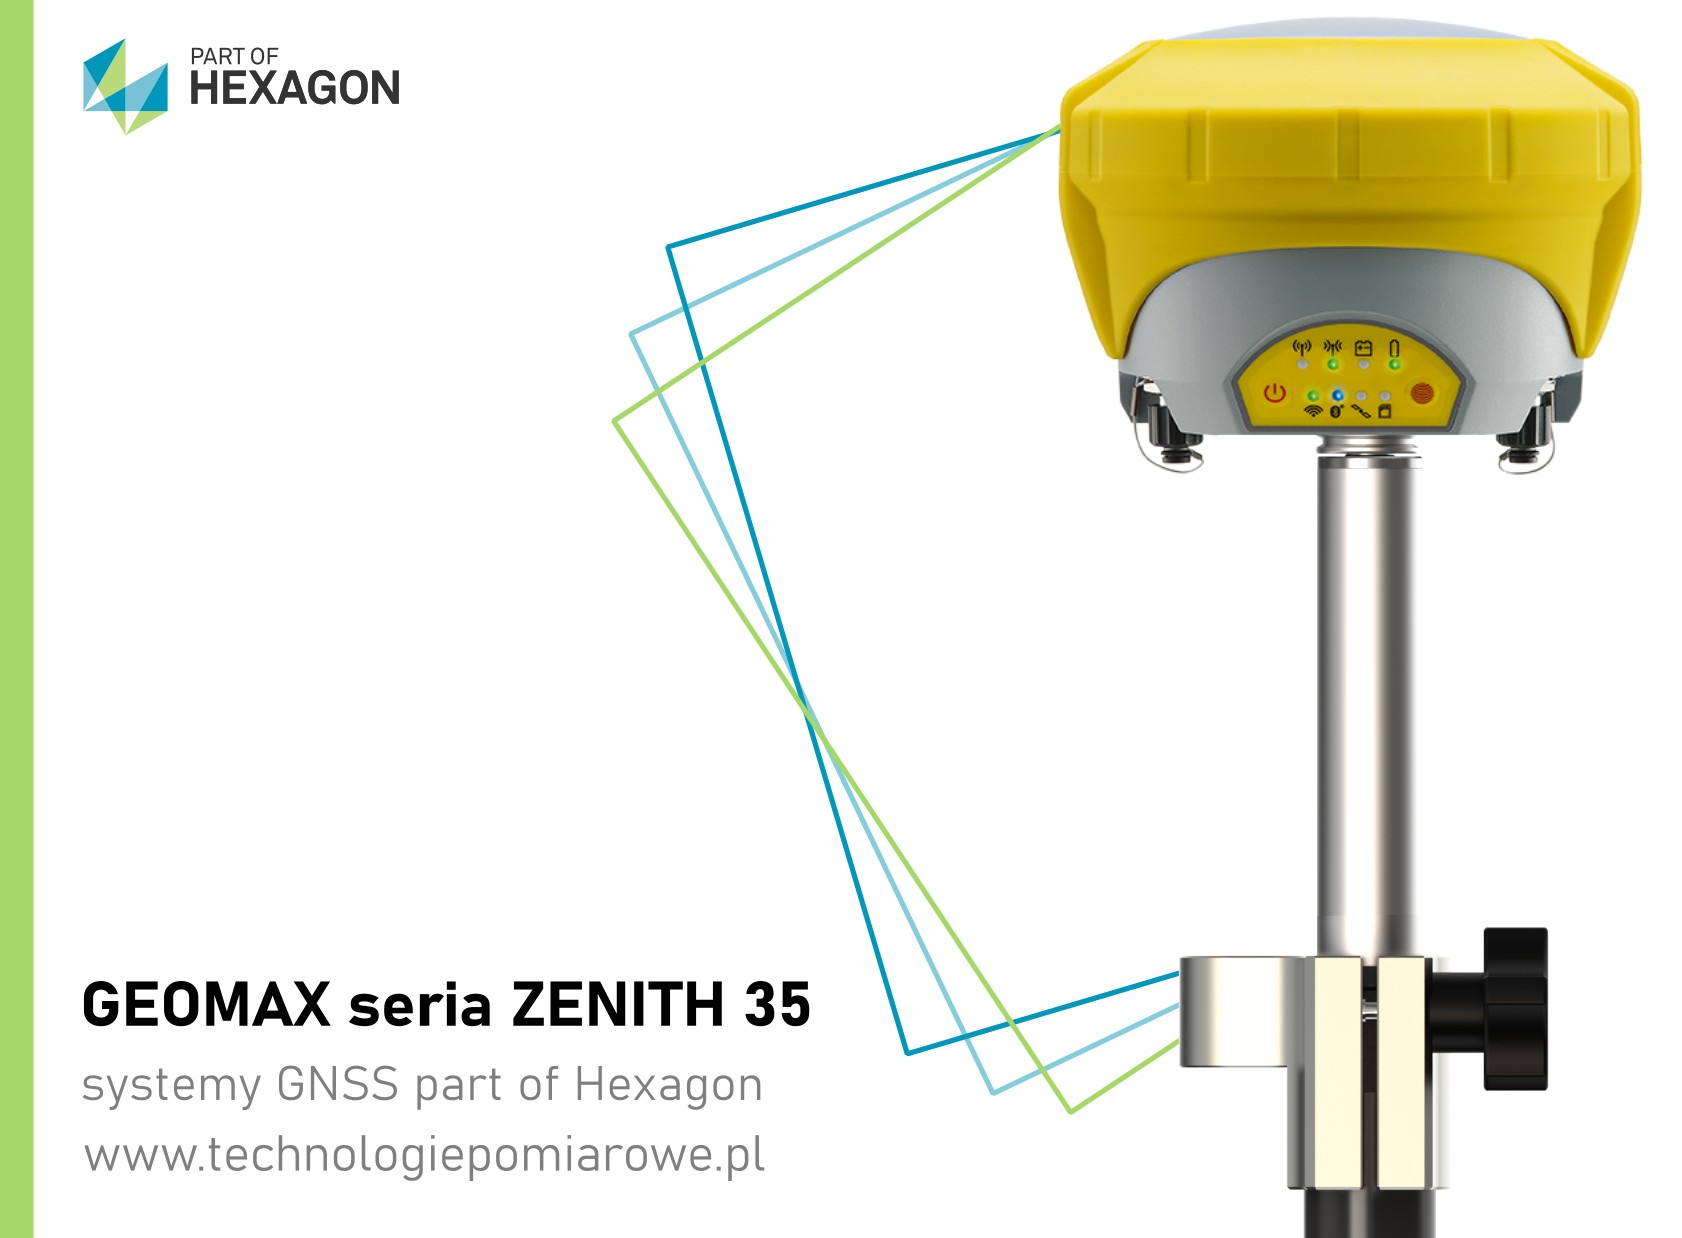 Geomax GPS GNSS odbiornik; Geomax szwajcarskie odbiorniki GNSS RTK RTN; Geodezyjny odbiornik GNSS RTK RTN szwajcarskiej marki Geomax model Zenith 35 Pro Tag; Aktualna cena odbiornik GNSS RTK RTN Geomax model Zenith 35 Pro Tag; geomax zenith 35; Zenith35 PRO GNSS marki Geomaxgeomax gps Zenith 35/35PRO; odbiornik gnss geomax zenith 35 pro; Geoline gps geomax; zestaw gnss geomax model zenith 35 pro tag; Geomax odbiorniki GNSS RTK RTN sprawdź ofertę; Zapraszamy promocja Geomax Zenith 35 PRO TAG; precyzyjny odbiornik RTK GNSS z pomiarem z wychyleniem geomax zenith 35 pro tag; odbiornik RTK z wychyleniem; geomax zenith 35 pro cena; geomax zenith 35 pro opinie; zenith35 pro cena; GEOMAX Zenith 10; GeoMax GNSS; GPS GEOMAX ZENITH 35 PRO - RTN, RTK, STATYKA; odbiornik GNSS marki Leica; Leica GPS GNSS RTK RTN; zestaw gps Leica; zestaw RTK Leica Geosystems; cena odbiornik Leica; cena odbiornik Leica GS18; odbiornik GNSS Leica; Leica GS18T cena; Ranking GPS geodezyjnych; Odbiornik GNSS cena; Leica GS16 cena; Tani odbiornik GPS RTK; Leica GS18T price; GPS geodezyjny cena; GPS Leica cena; Leica GS18 T; Sprzęt geodezyjny - Odbiorniki GPS; Używany odbiornik GPS LEICA GS15 z kontrolerem CS15; Odbiornik GPS + GLONASS marki Leica model GS15; odbiornik Trimble R12; Trimble R12 cena; Trimble R10 Sprzedam; Trimble R12 price; Trimble R12 eBay; Trimble R12 opinie; Trimble R12 IMU; Trimble R10 cena; Trimble Geodezja; trimble r10 sprzedam; ranking gps geodezyjnych; geomax zenith 25 cena; trimble r10 cena; geomax zenith 35 opinie; Odbiornik z wychyleniem model Zenith 35 TAG marki Geomax; Zintegrowany czujnik wychylenia zestaw RTK GNSS; odbiornik ruchomy GNSS RTK; odbiornik GNSS RTL z systemem TILT; Oferta systemów geodezyjnych: odbiornik GNSS RTK marki SOUTH model S82T; Sprawdź aktualne promocja odbiornik gnss rtk SOUTH model S82T; Aktualna cena odbiornik GNSS RTK RTN SOUTH model S82T; Komis sprzętu geodezyjnego oferuje odbiornik gnss rtk marki SOUTH model S82T; odbiornik GNSS Kolida; kolida k5 infinity; kolida s680p cena; kolida h3; pentax g6ti; geopryzmat raport gps; gps kolida k5 infinity; kolida ufo; kolida k58+; używany sprzęt geodezyjny; tani zestaw RTK; tani zestaw GNSS; tani odbiornik RTK; tani zestaw odbiornika GNSS; odbiornik SOUTH S82T; sklep geodezyjny odbiorniki RTK GNSS; chiński gps rtk; tani odbiornik gps rtk; jaki gps dla geodety; ruide gps opinie; zestaw gps rtk; gps ruide; gps w geodezji; gps kolida; odbiornik gnss rtk south galaxy G6 IMU; odbiornik gnss rtk south galaxy g6; odbiornik gnss rtk southg1; odbiornik gnss rtk southg1 plus; odbiornik gnss rtk south s660; odbiornik gnss rtk south s86; odbiornik gnss rtk kolida k5 infinity; odbiornik gnss rtk kolida K9T; odbiornik gnss rtk kolida K1; odbiornik gnss rtk kolida K20; odbiornik gnss rtk kolida K3; odbiornik gnss rtk kolida K5 IMU; odbiornik gnss rtk kolida K5 UFO; odbiornik gnss rtk kolida 680; odbiornik gnss rtk stonex S900; odbiornik gnss rtk stonex S850; odbiornik gnss rtk stonex S700; odbiornik gnss rtk ruide; pulsar; odbiornik gnss rtk ruide nova R6; odbiornik gnss rtk ruidemeteor S680; odbiornik gnss rtk ruide r90i;